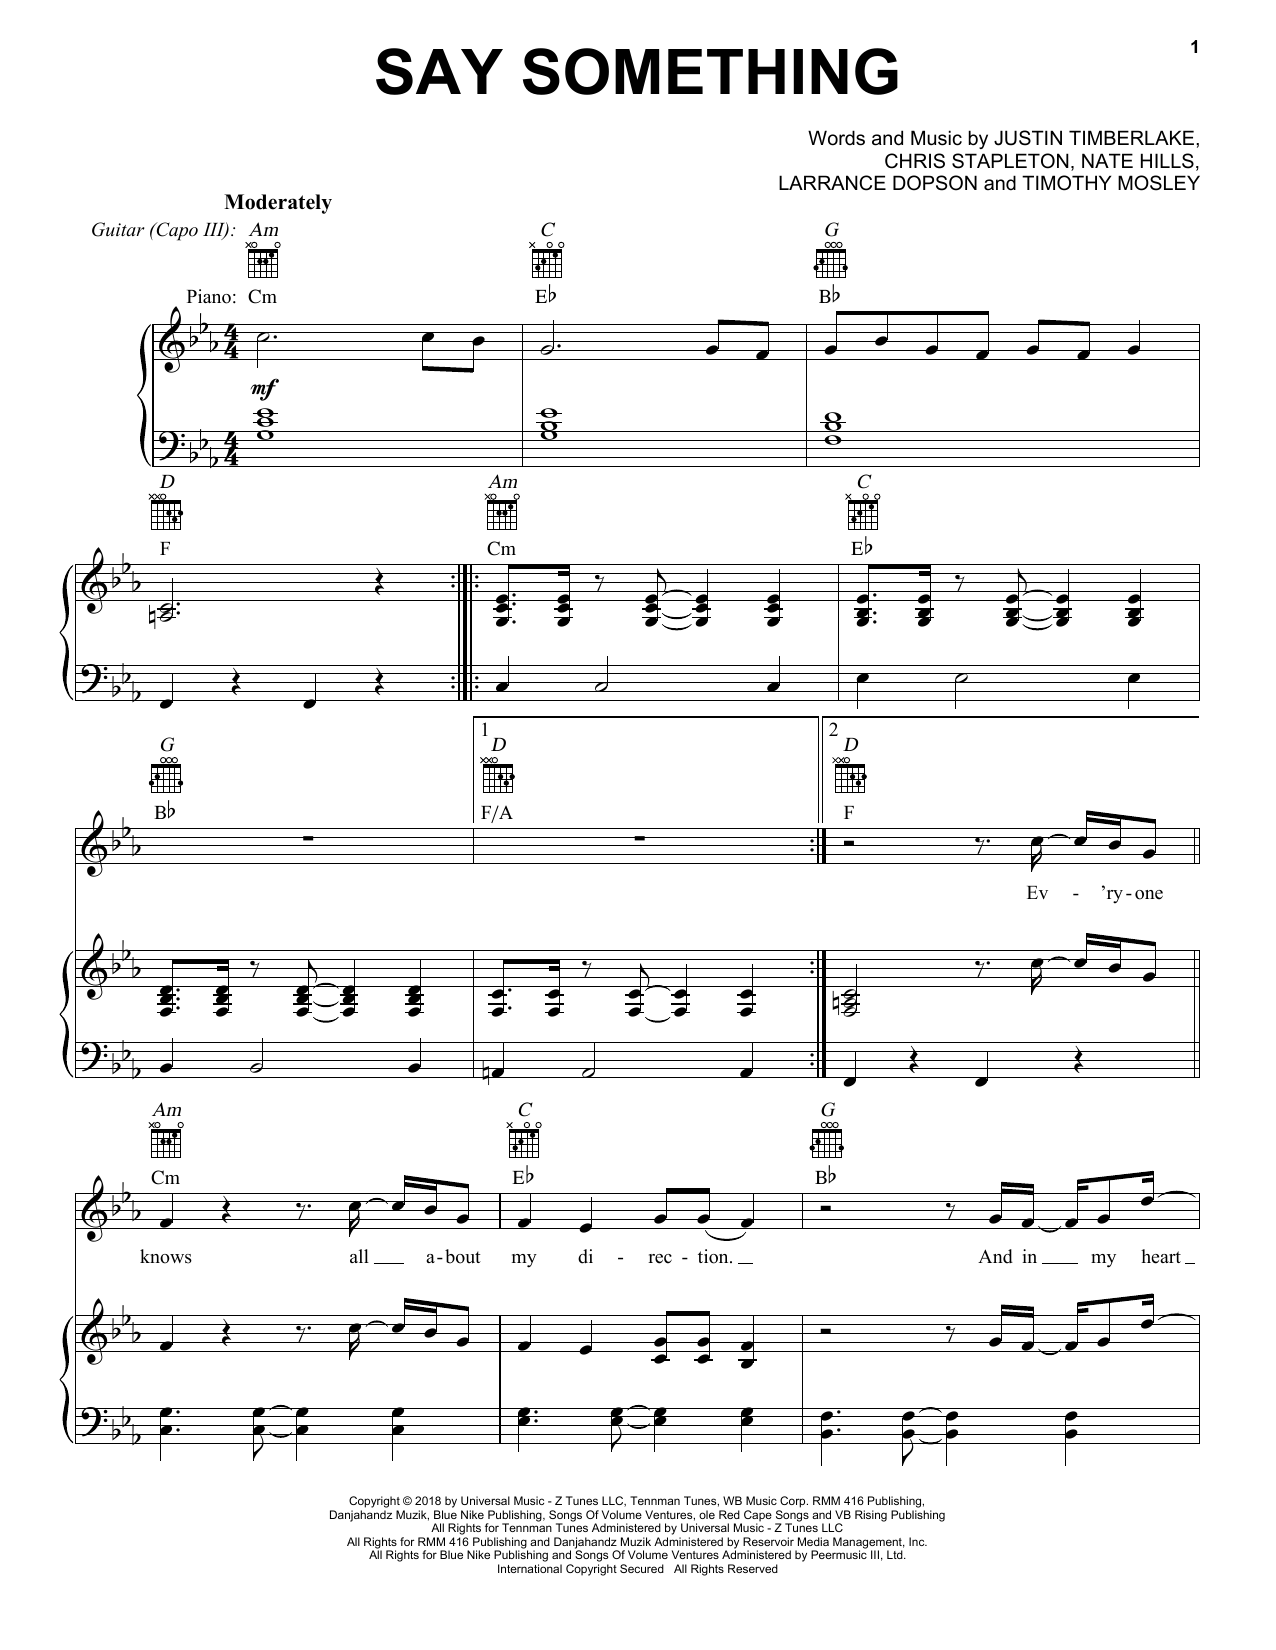 Justin Timberlake Say Something (feat. Chris Stapleton) Sheet Music Notes & Chords for Easy Guitar Tab - Download or Print PDF